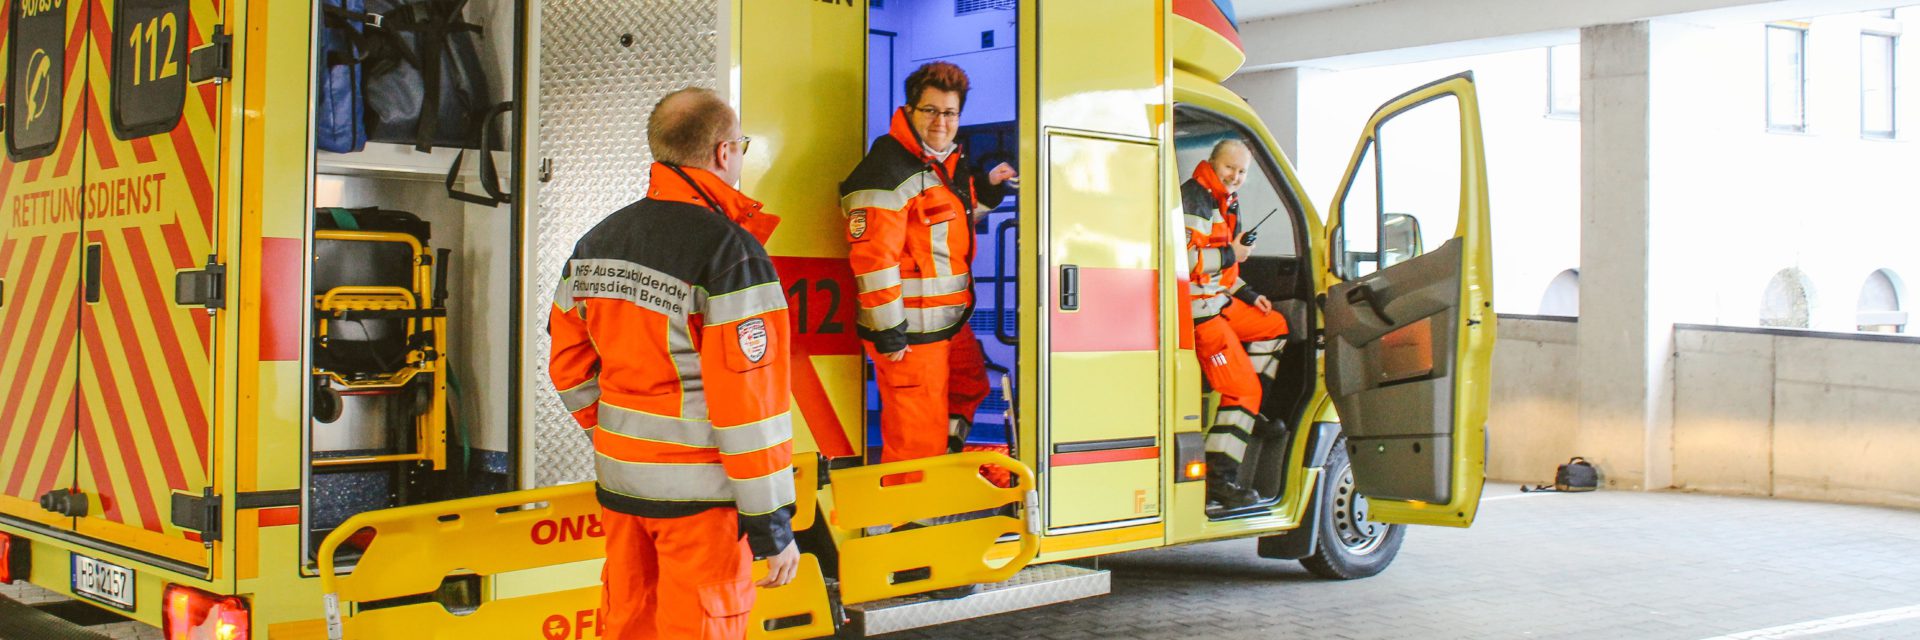 DRK Bremen - Berufsausbildung Notfallsanitäter*in